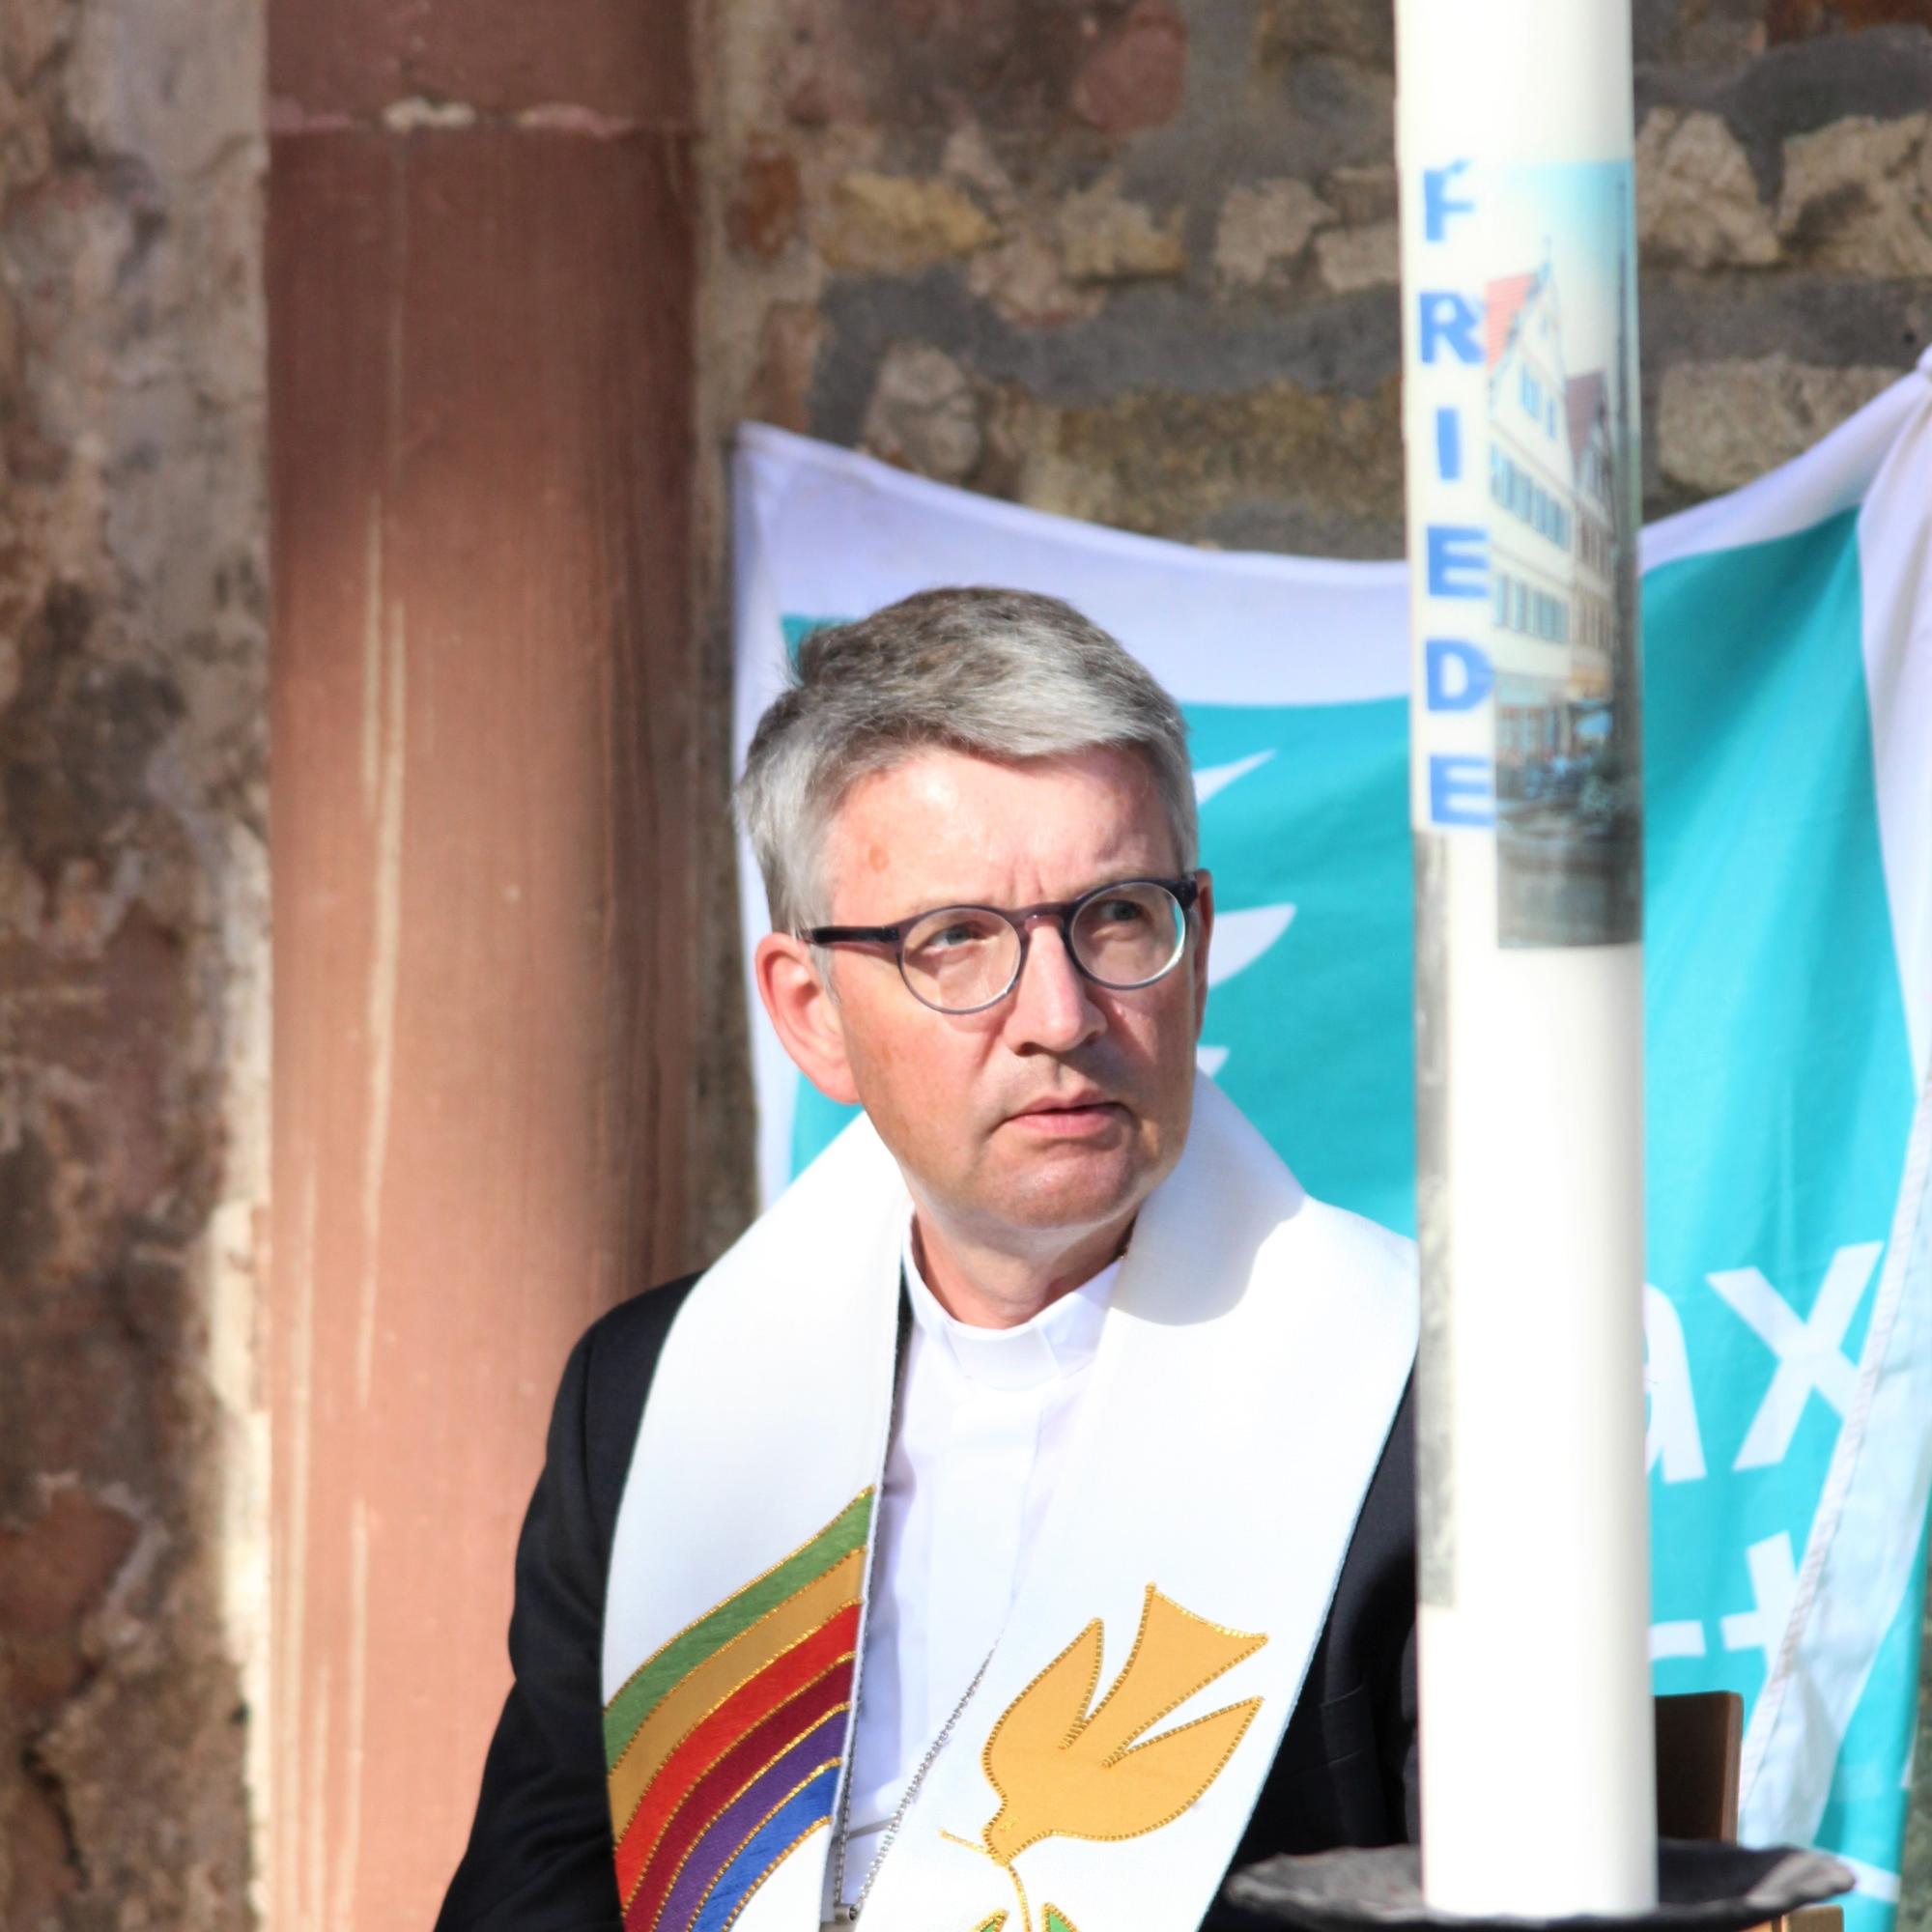 Bischof Peter Kohlgraf ist Präsident von Pax Christi.